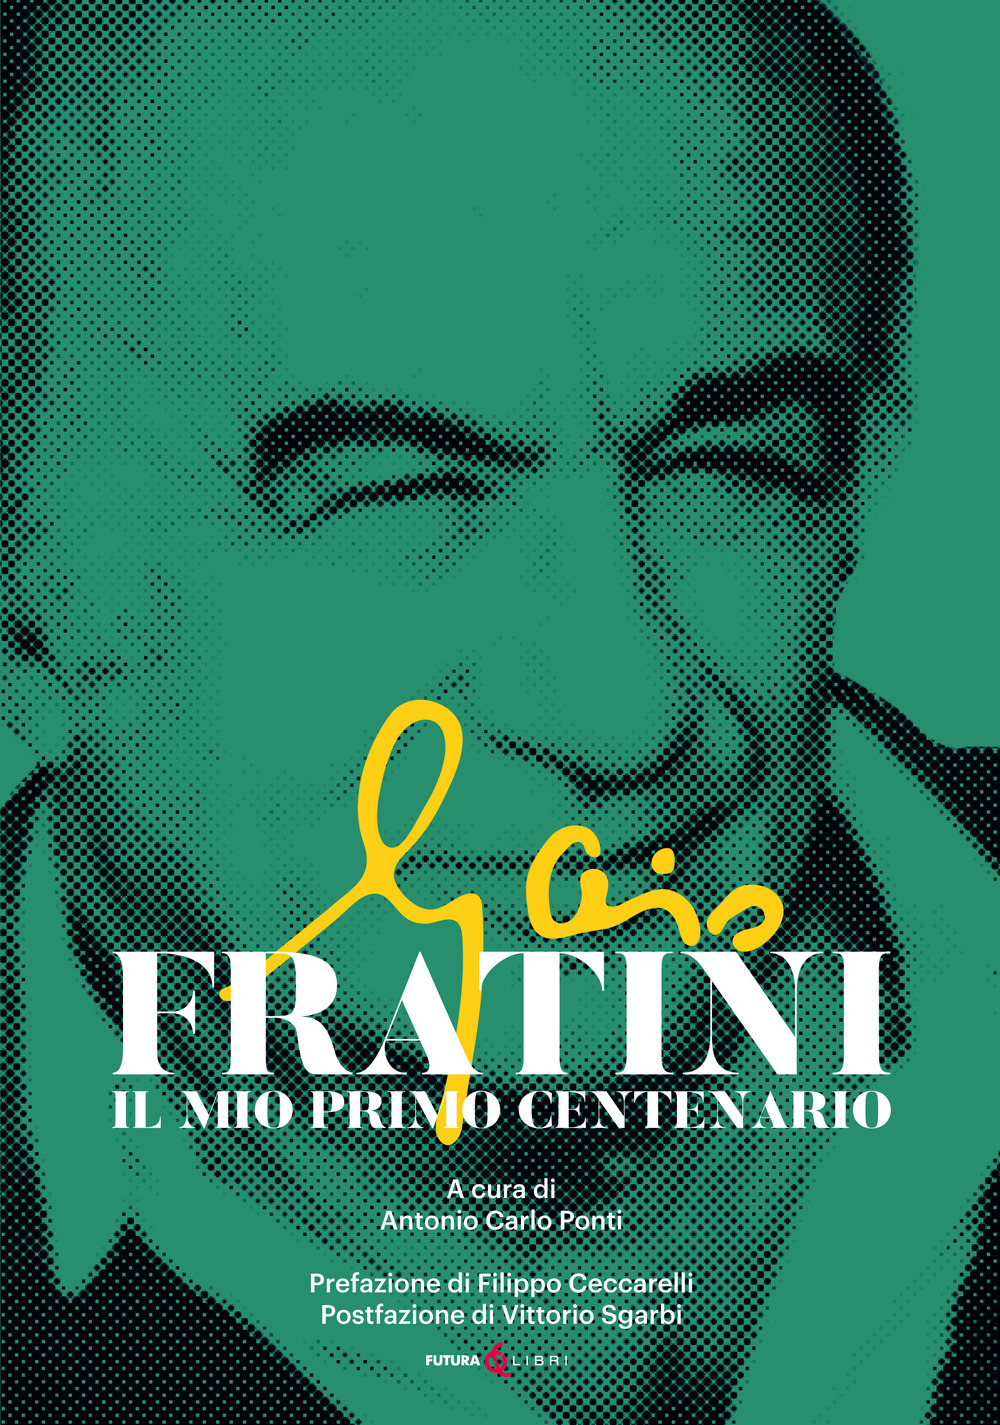 Gaio Fratini. Il mio primo centenario